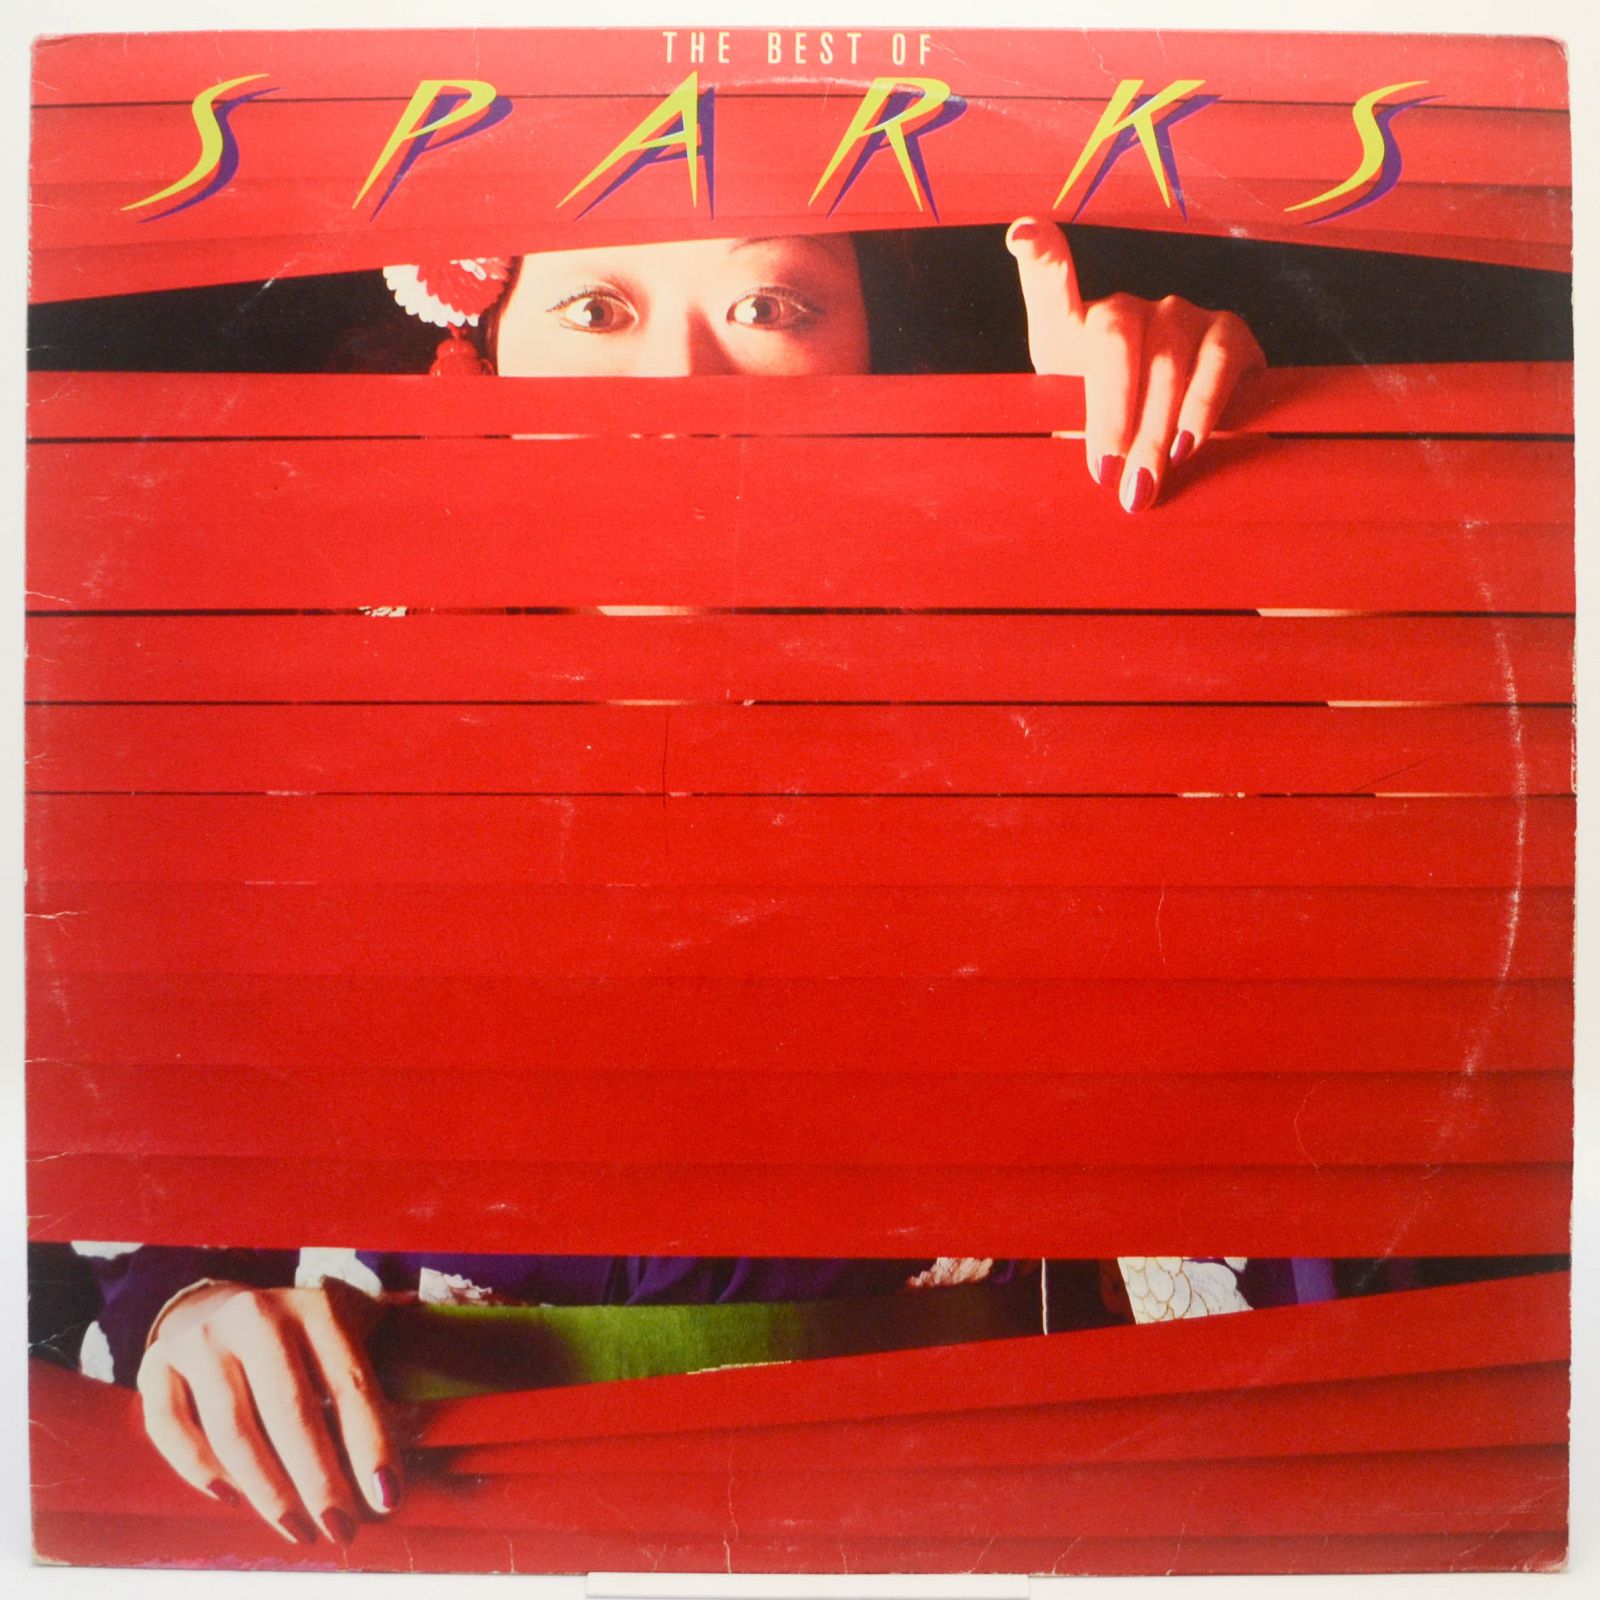 Sparks — The Best Of Sparks (UK), 1979